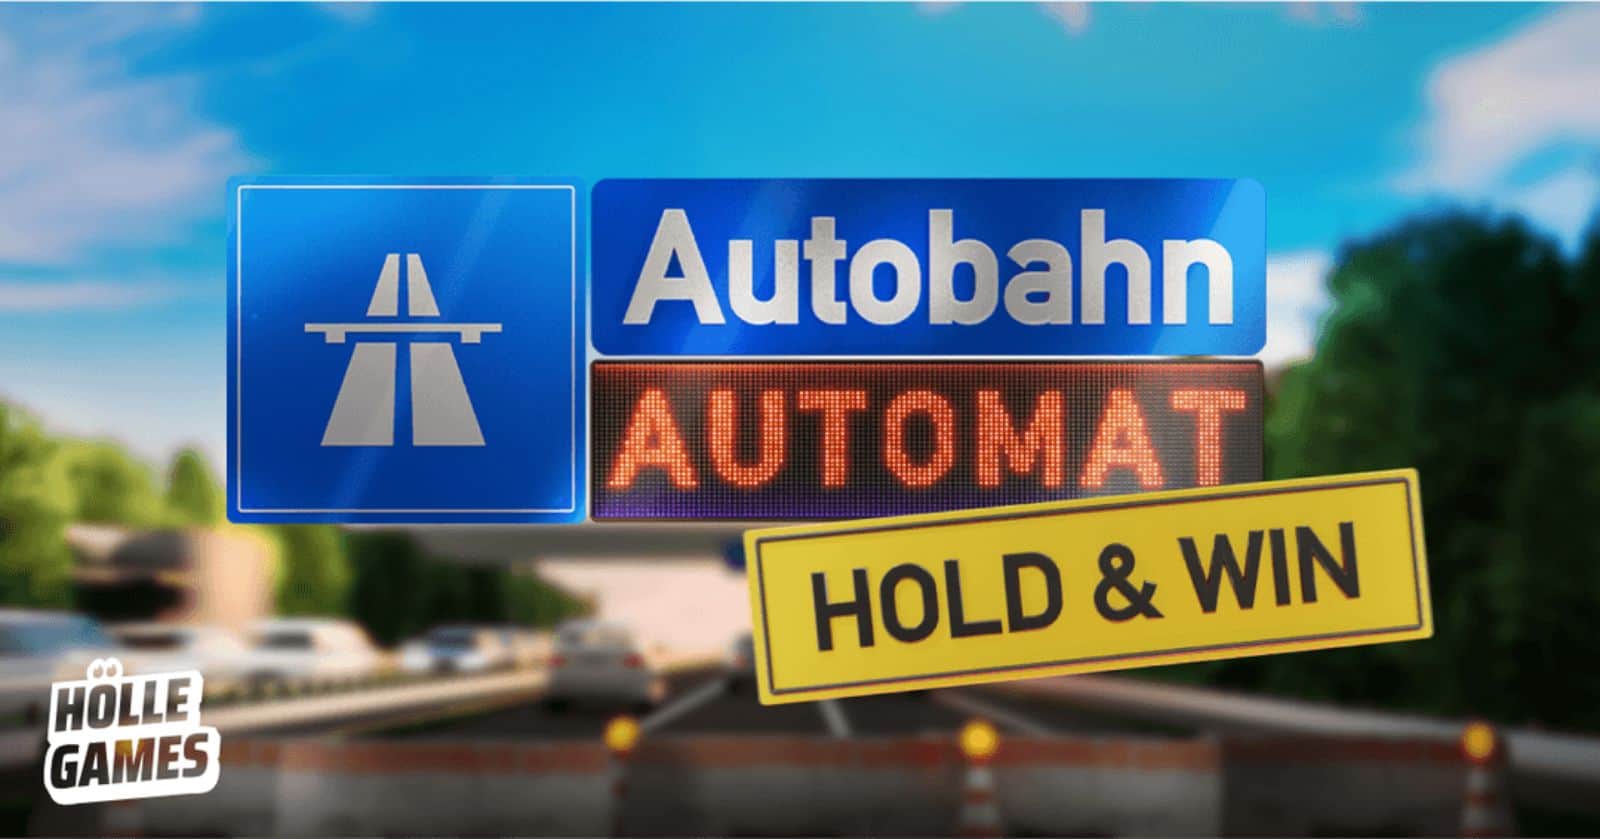 Autobahn Automat Slot Hölle Games